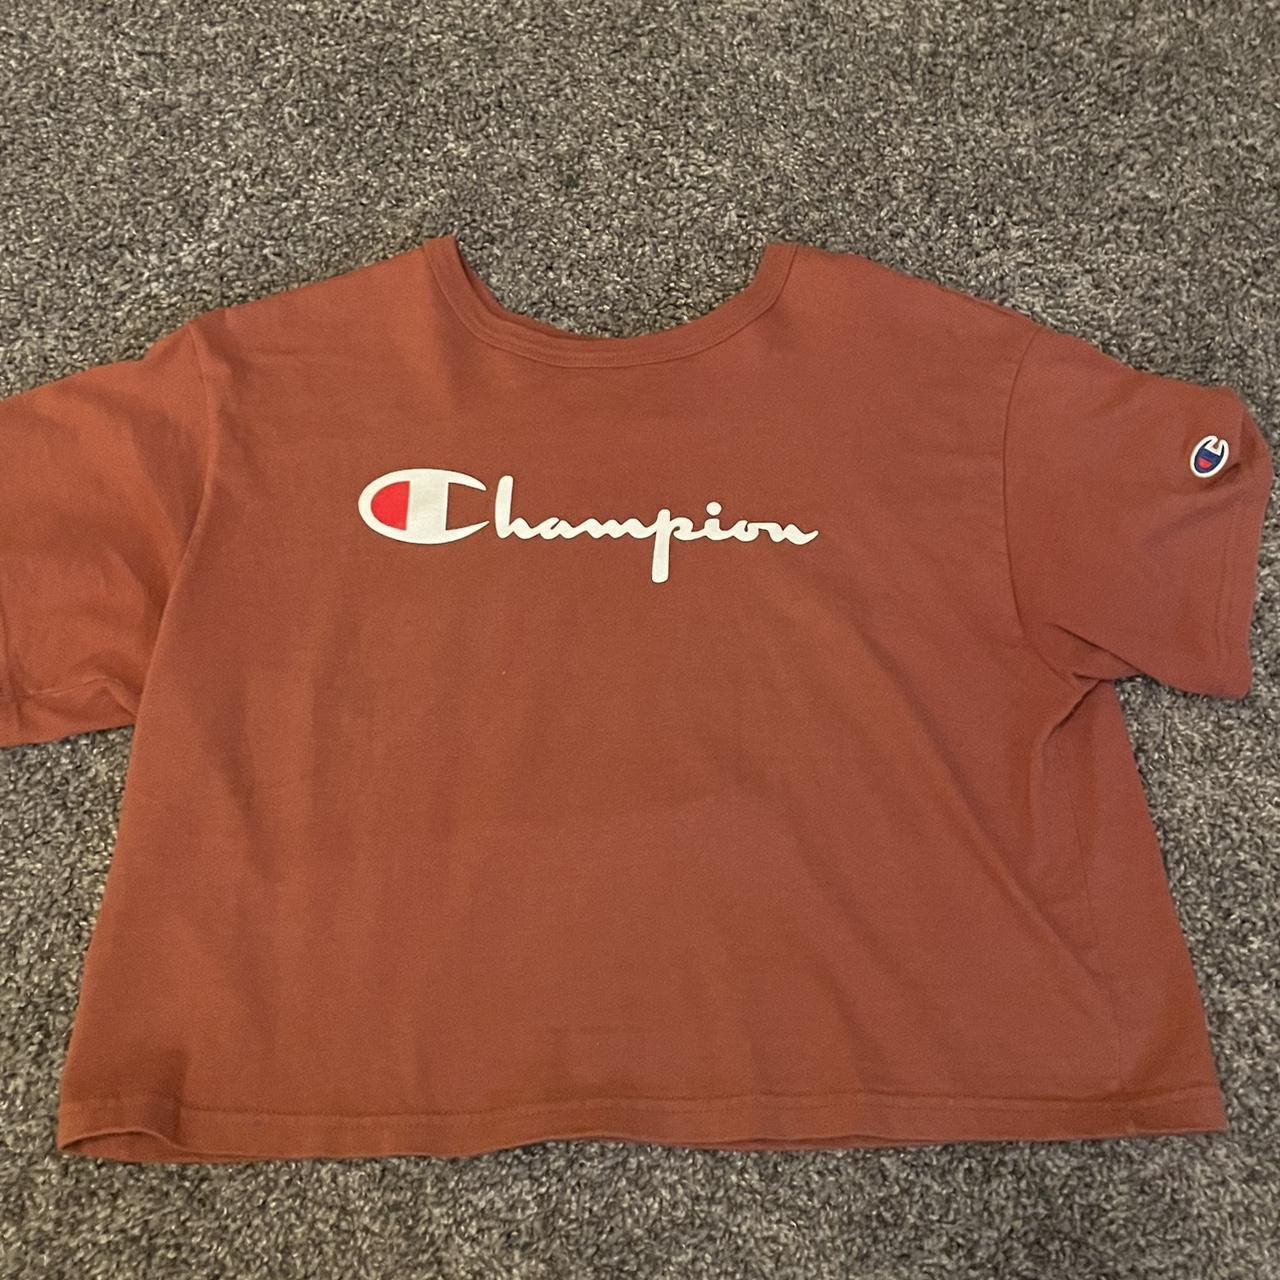 Champion Women's Orange and Burgundy T-shirt (2)